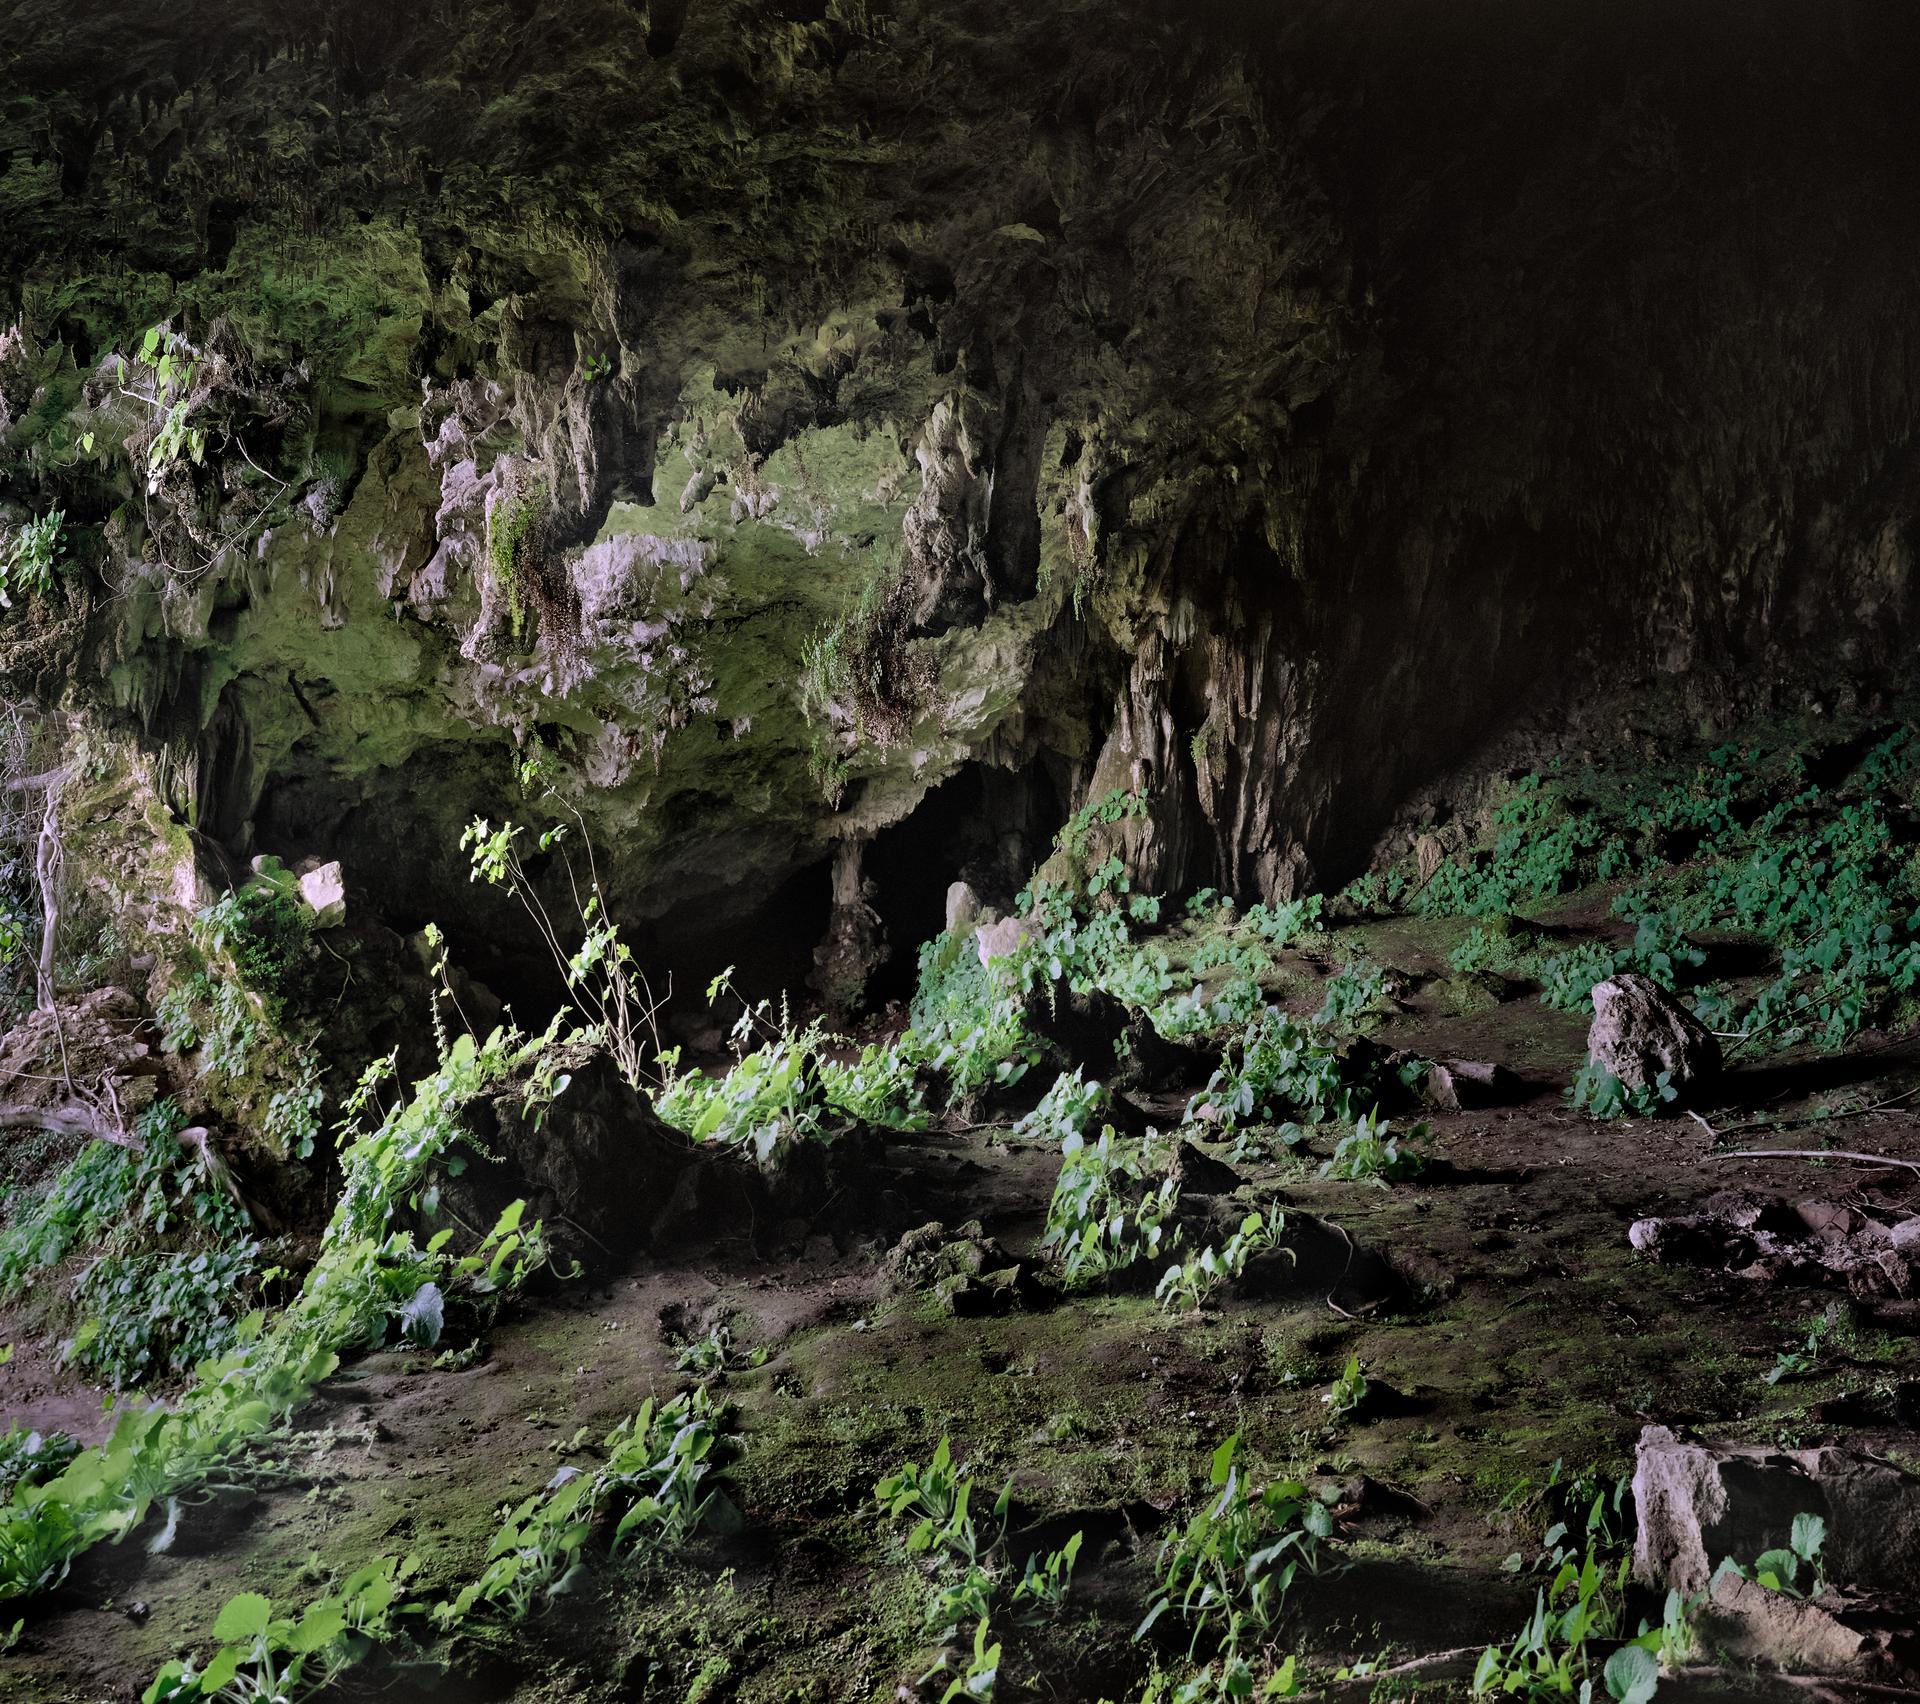 In The Cave by alireza fani